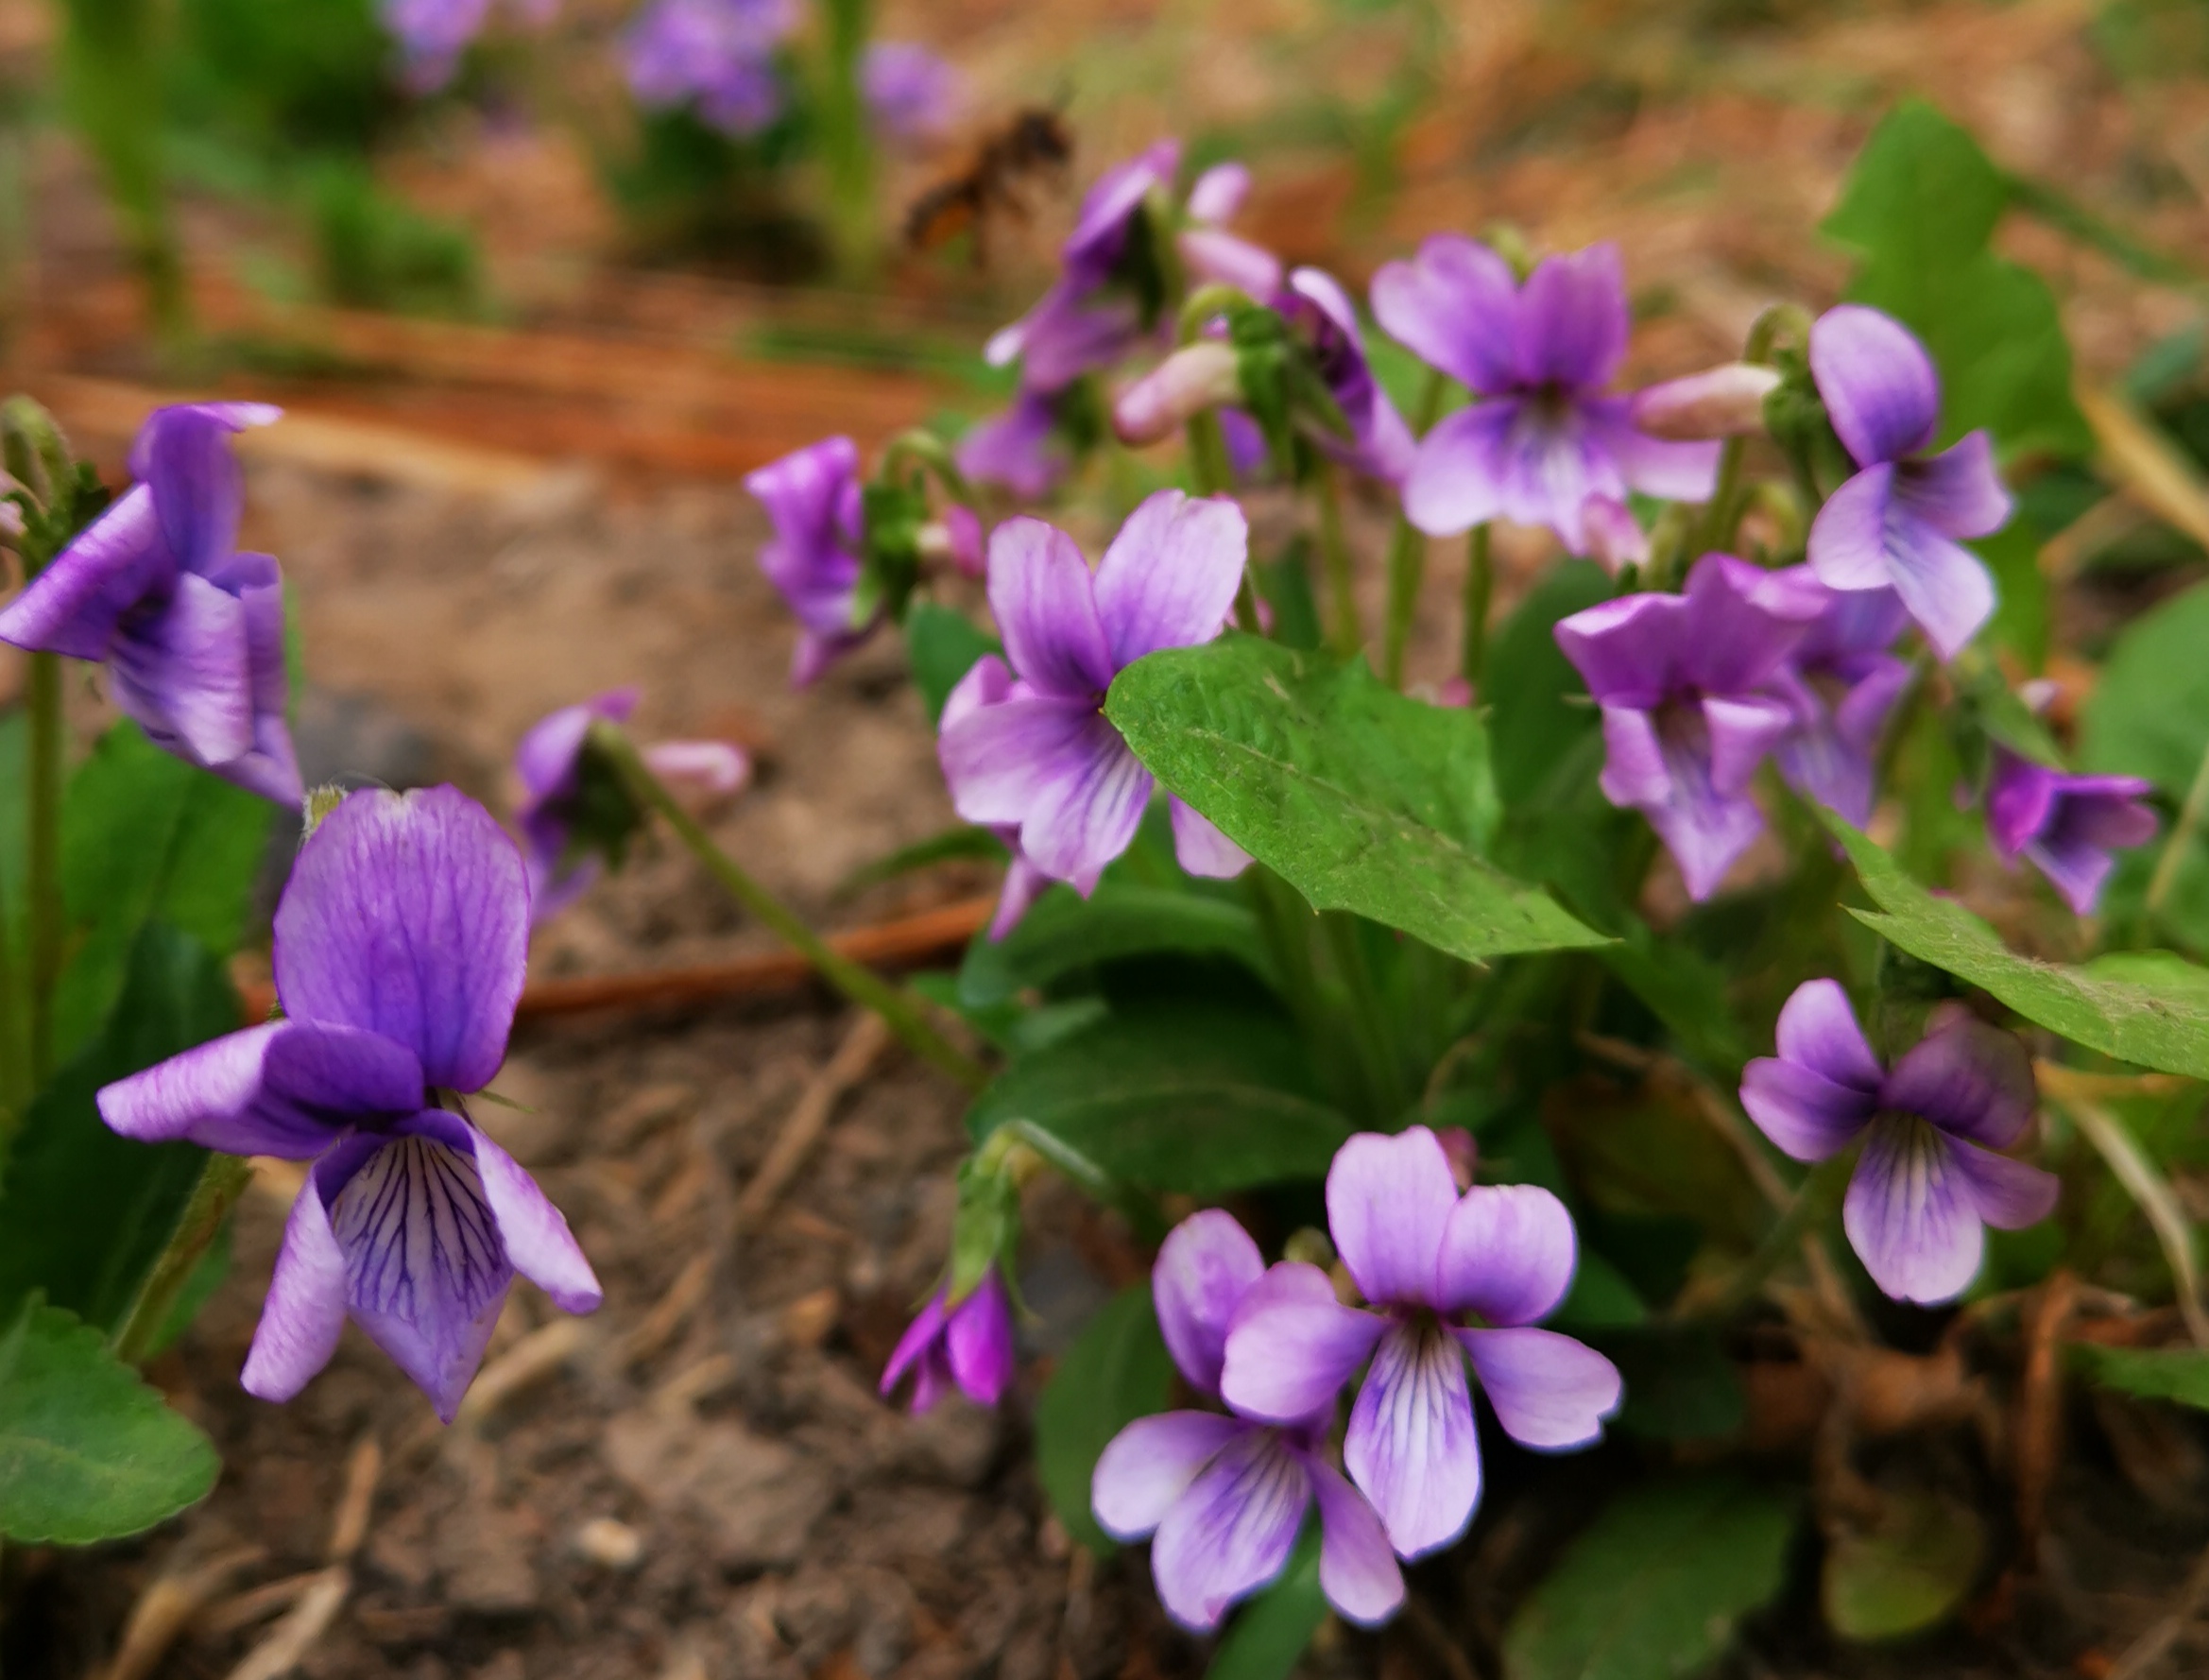 紫花地丁长白山中早春第二开花的植物而且可食可药可观赏 作家王天祥 Mdeditor